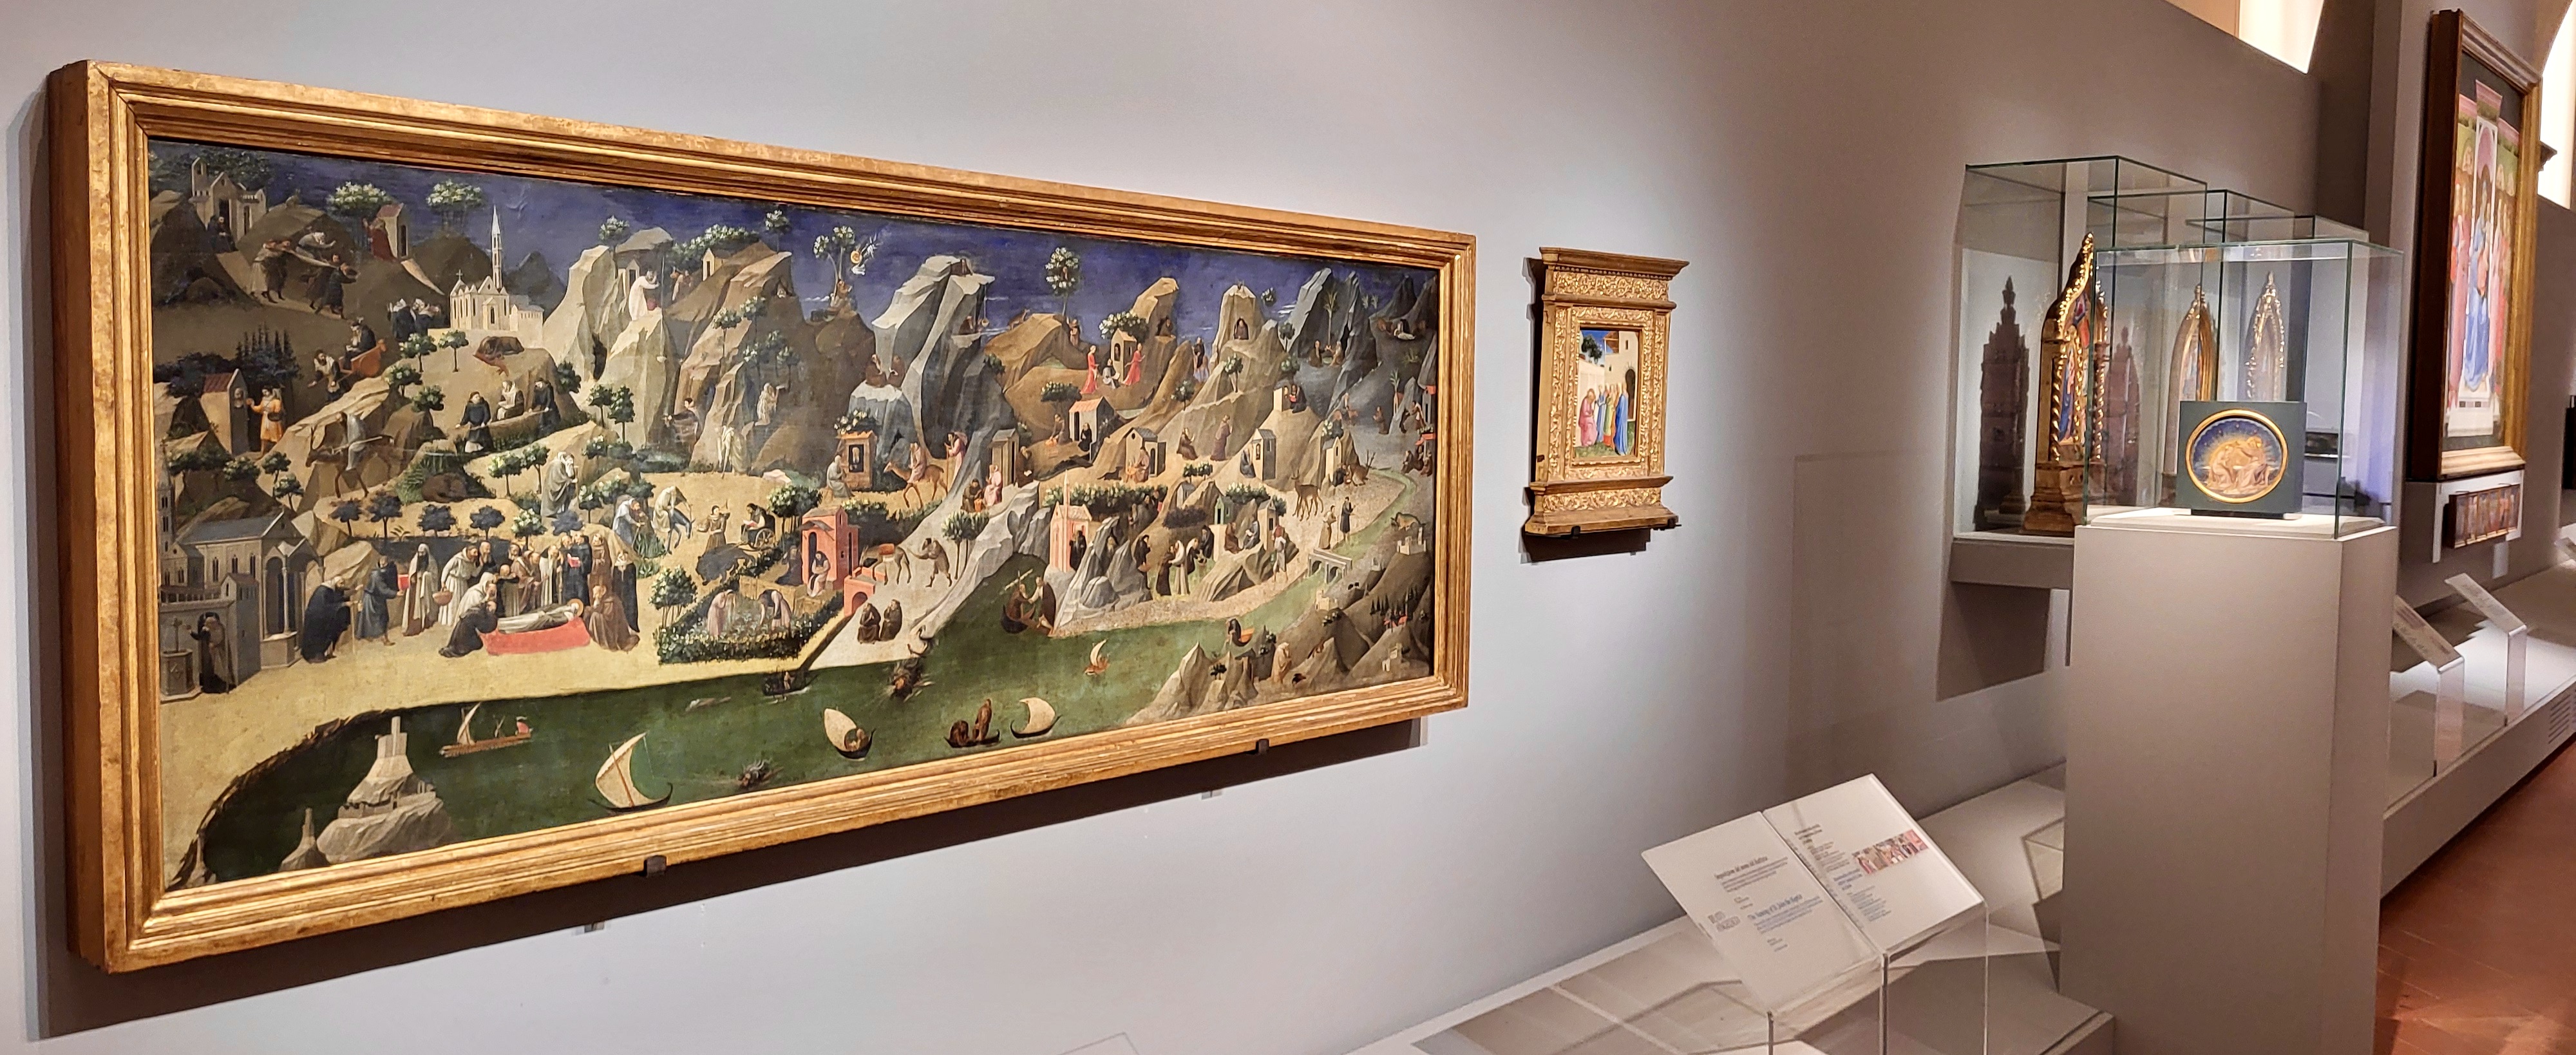 La Tebaide al museo di San Marco (Fonte foto Gallerie degli Uffizi)